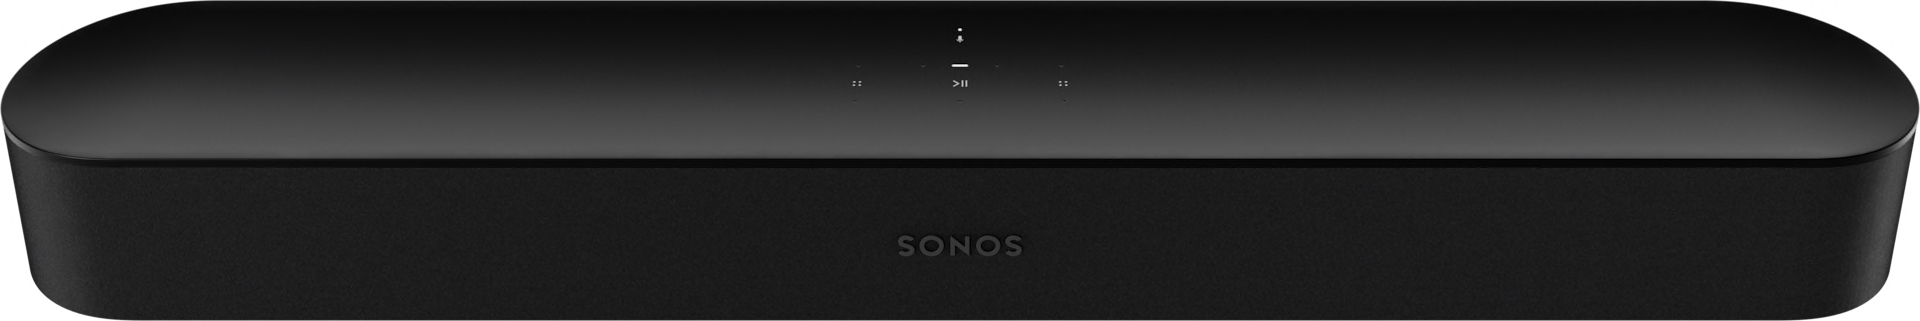 
                                    
                                Black Friday Sonos, tutte le offerte sulle casse connesse per film e musica di qualità